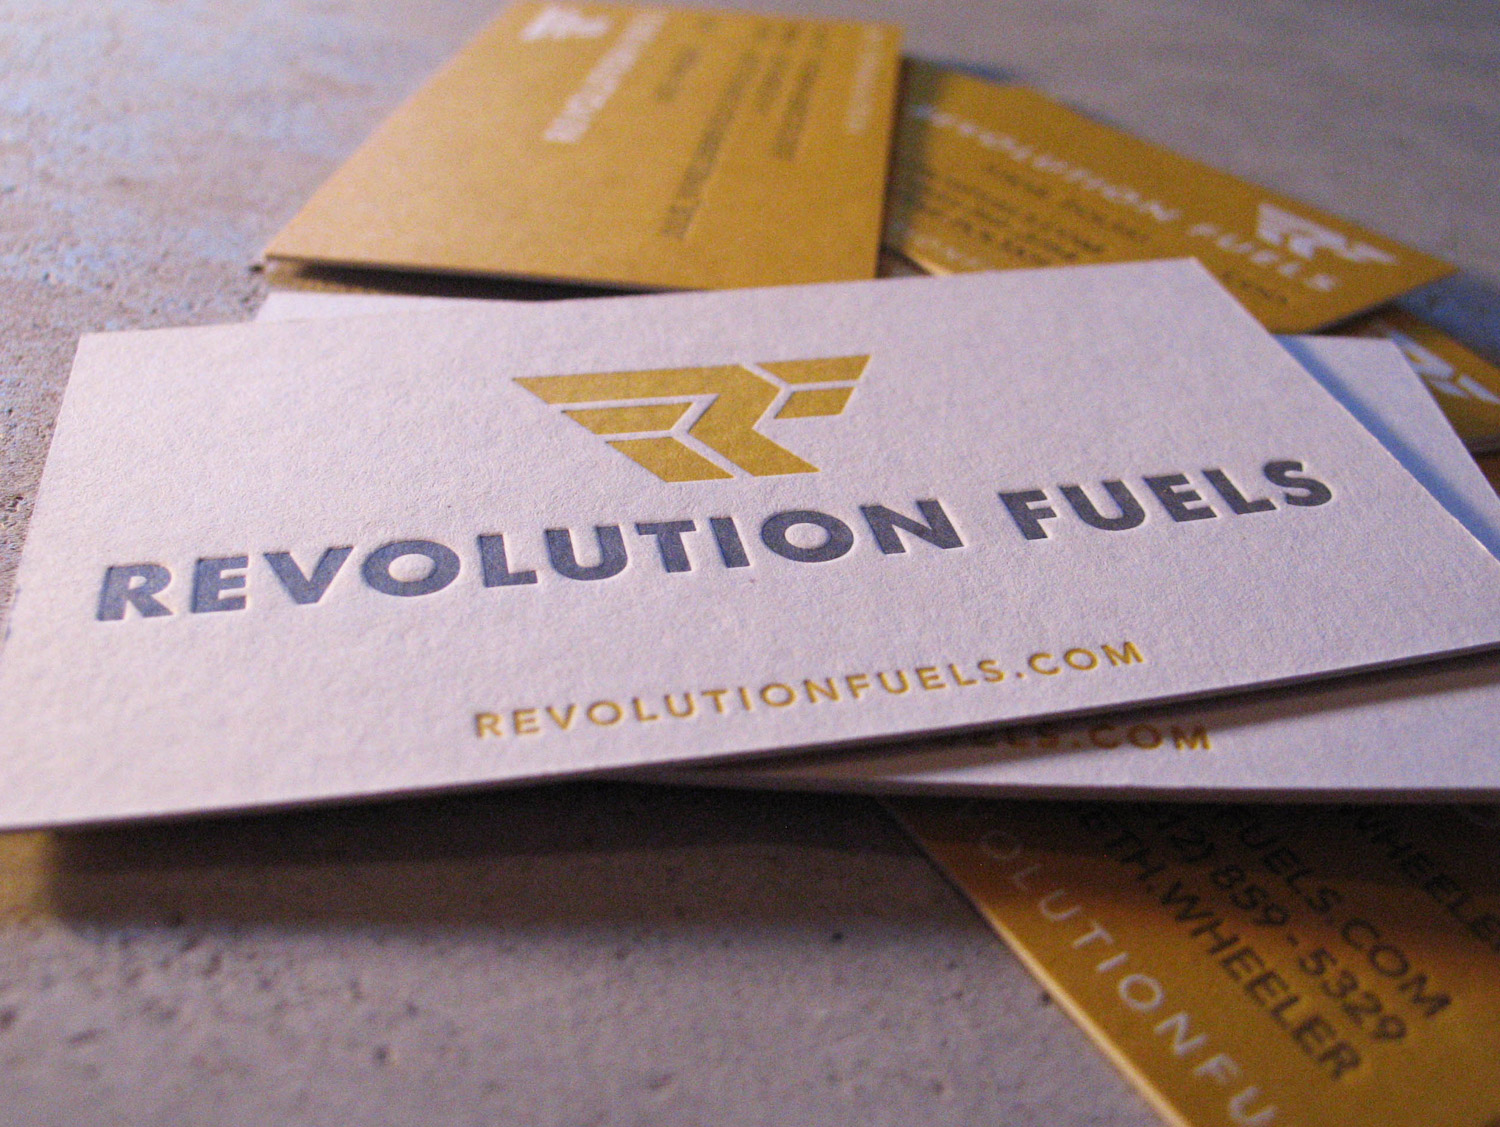 Revolution-Fuels-print-02.jpg